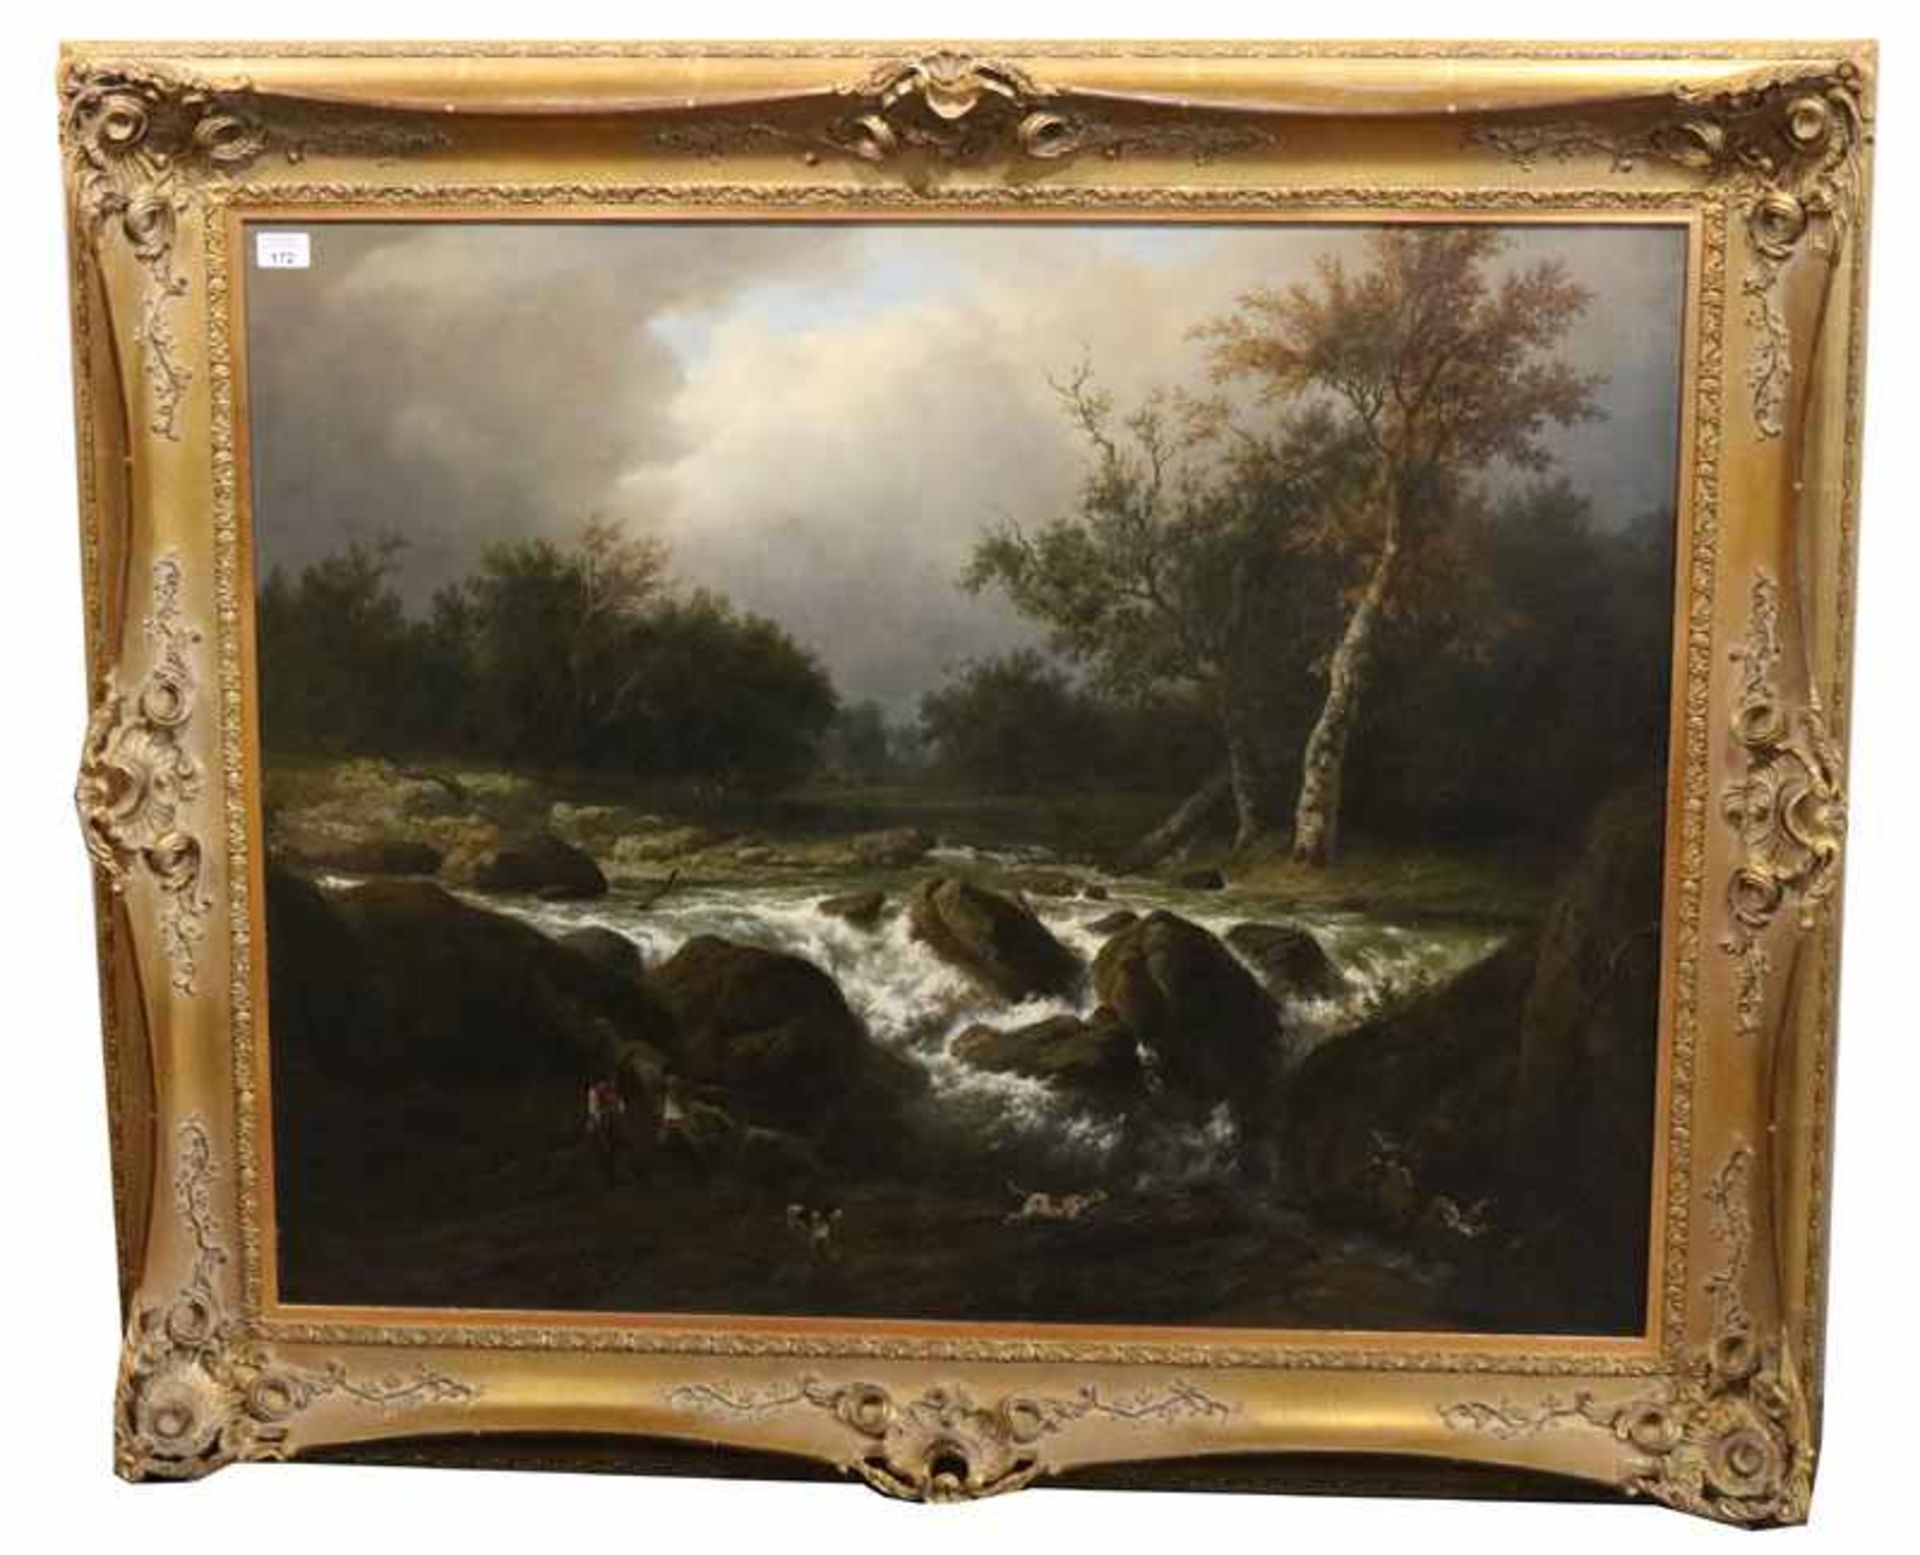 Gemälde ÖL/LW 'Landschafts-Szenerie mit Wildbach', signiert Karl (Charles) Bodmer, * 1809 Zürich +